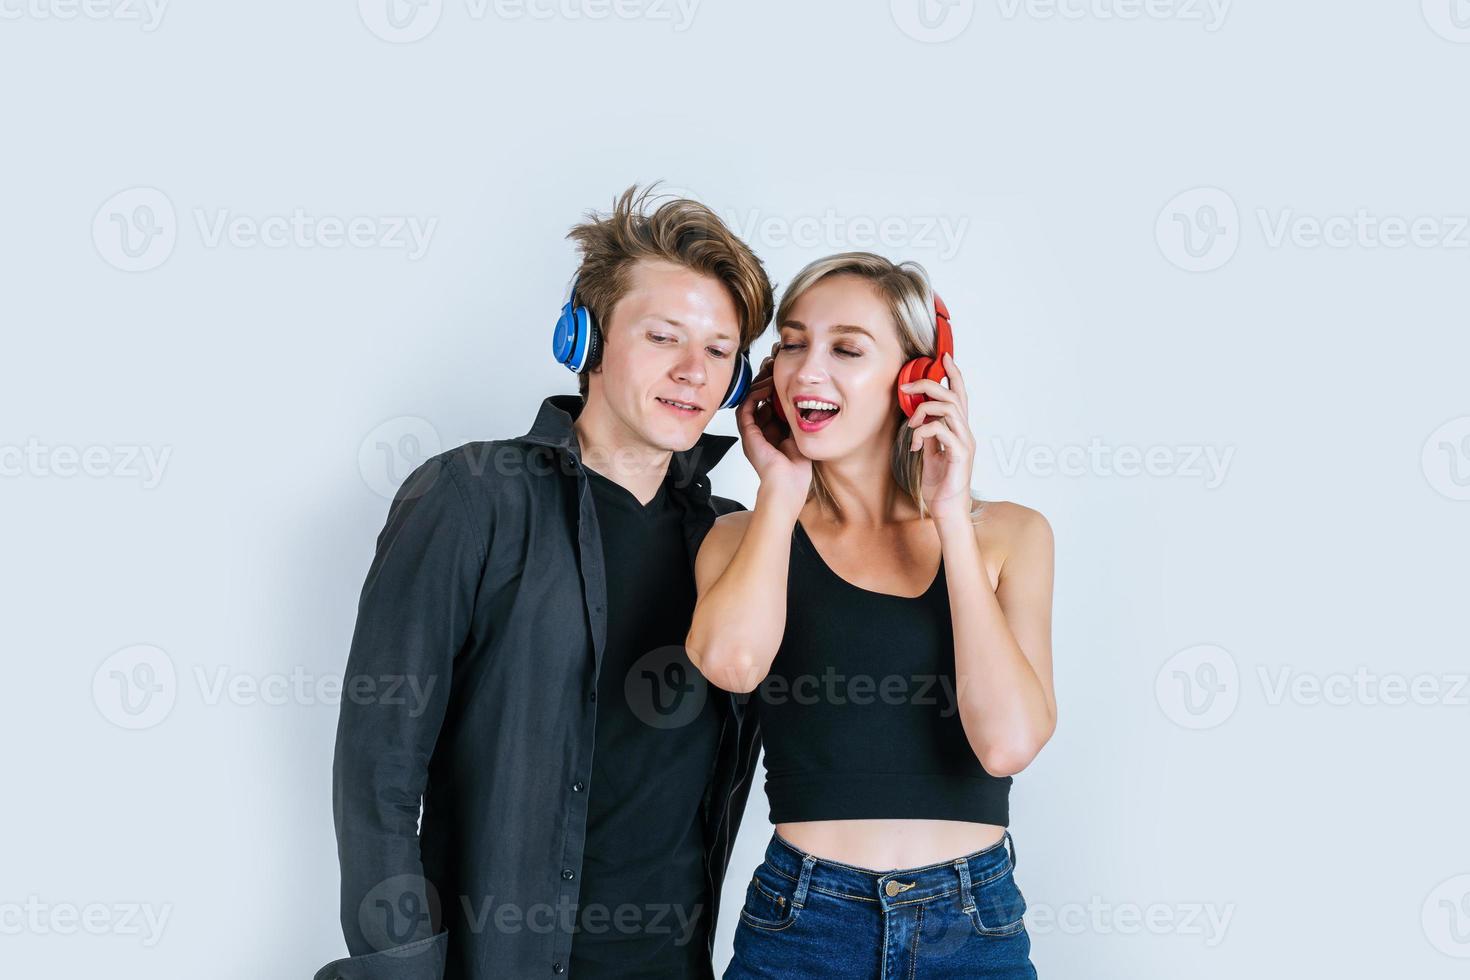 Feliz pareja joven en auriculares escuchando música en el estudio foto